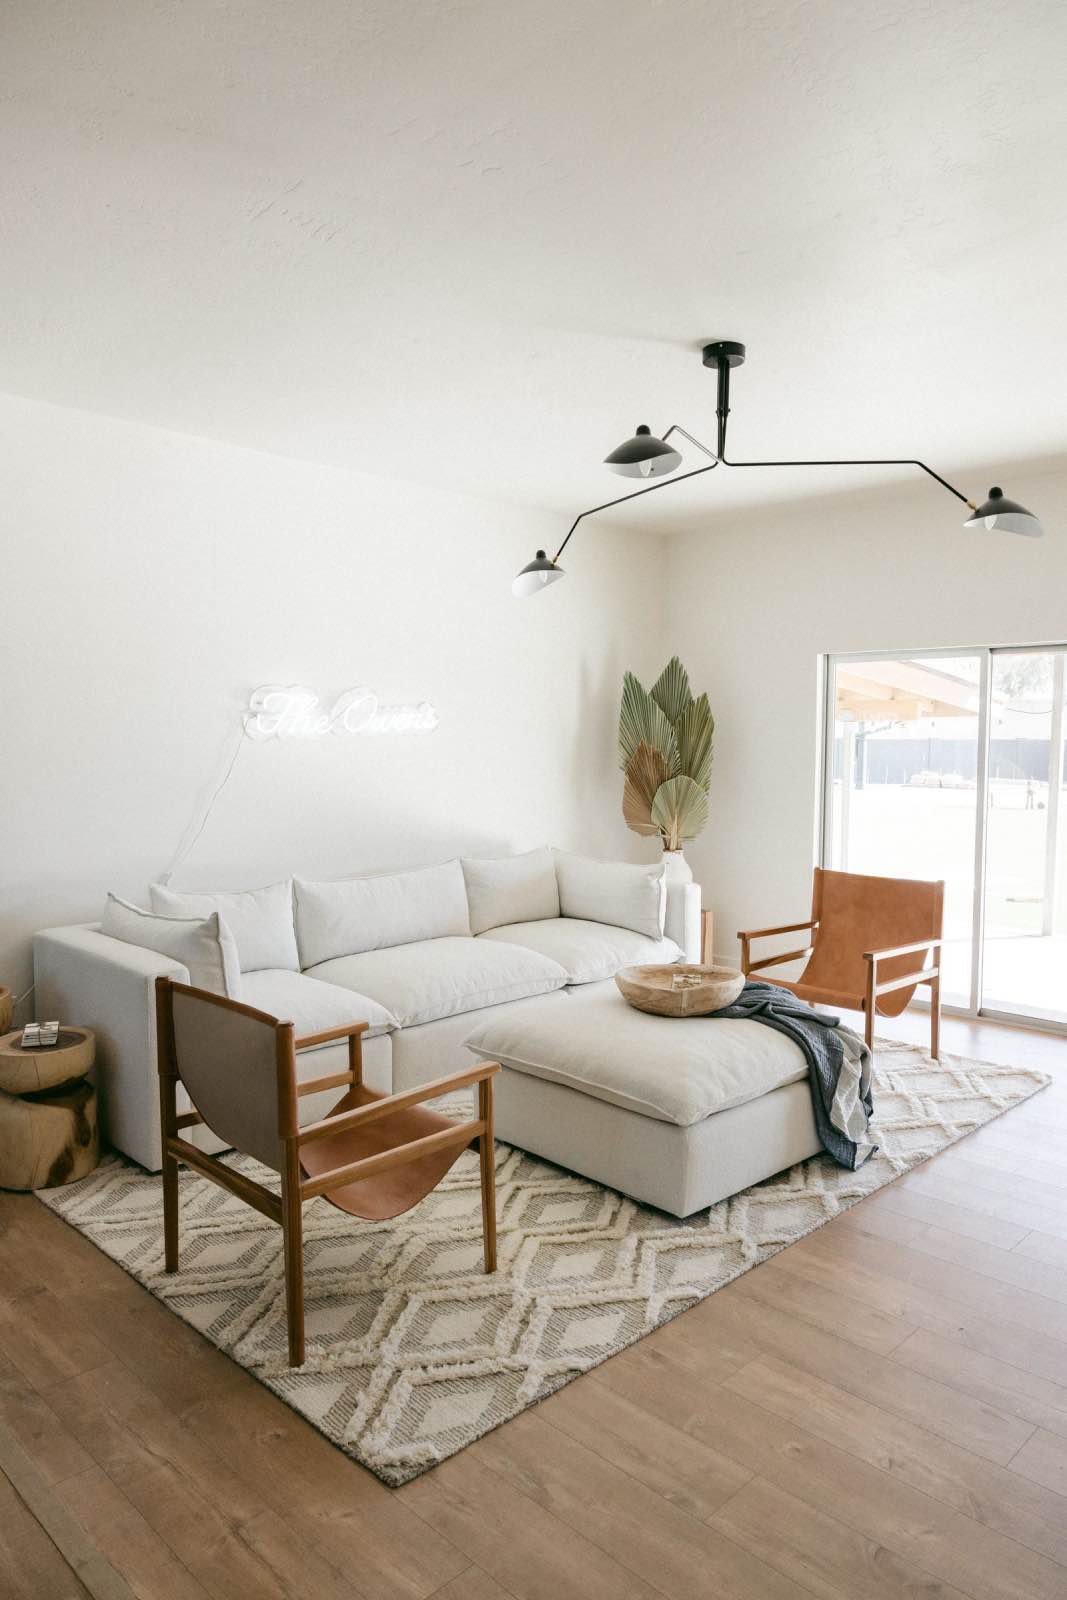 sala de estar de tonos neutros con sofá blanco y sillones marrones